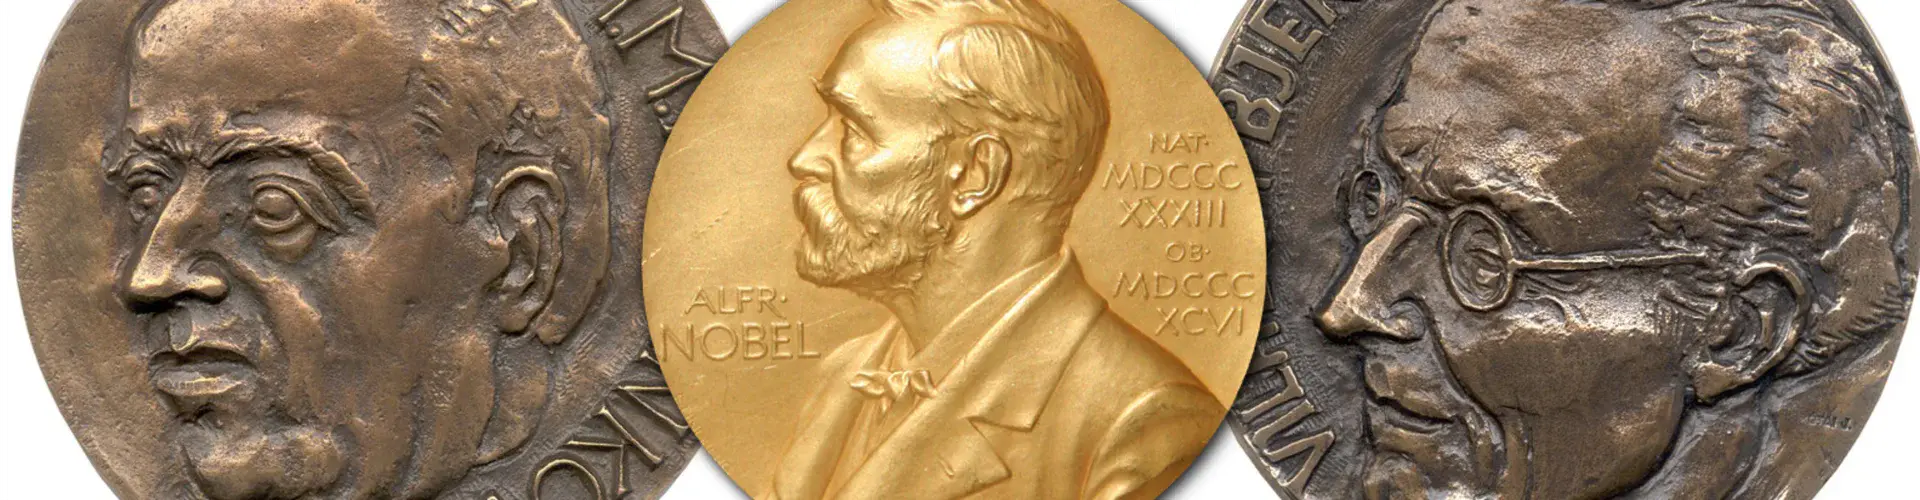 Nobel Prize winners-header.png